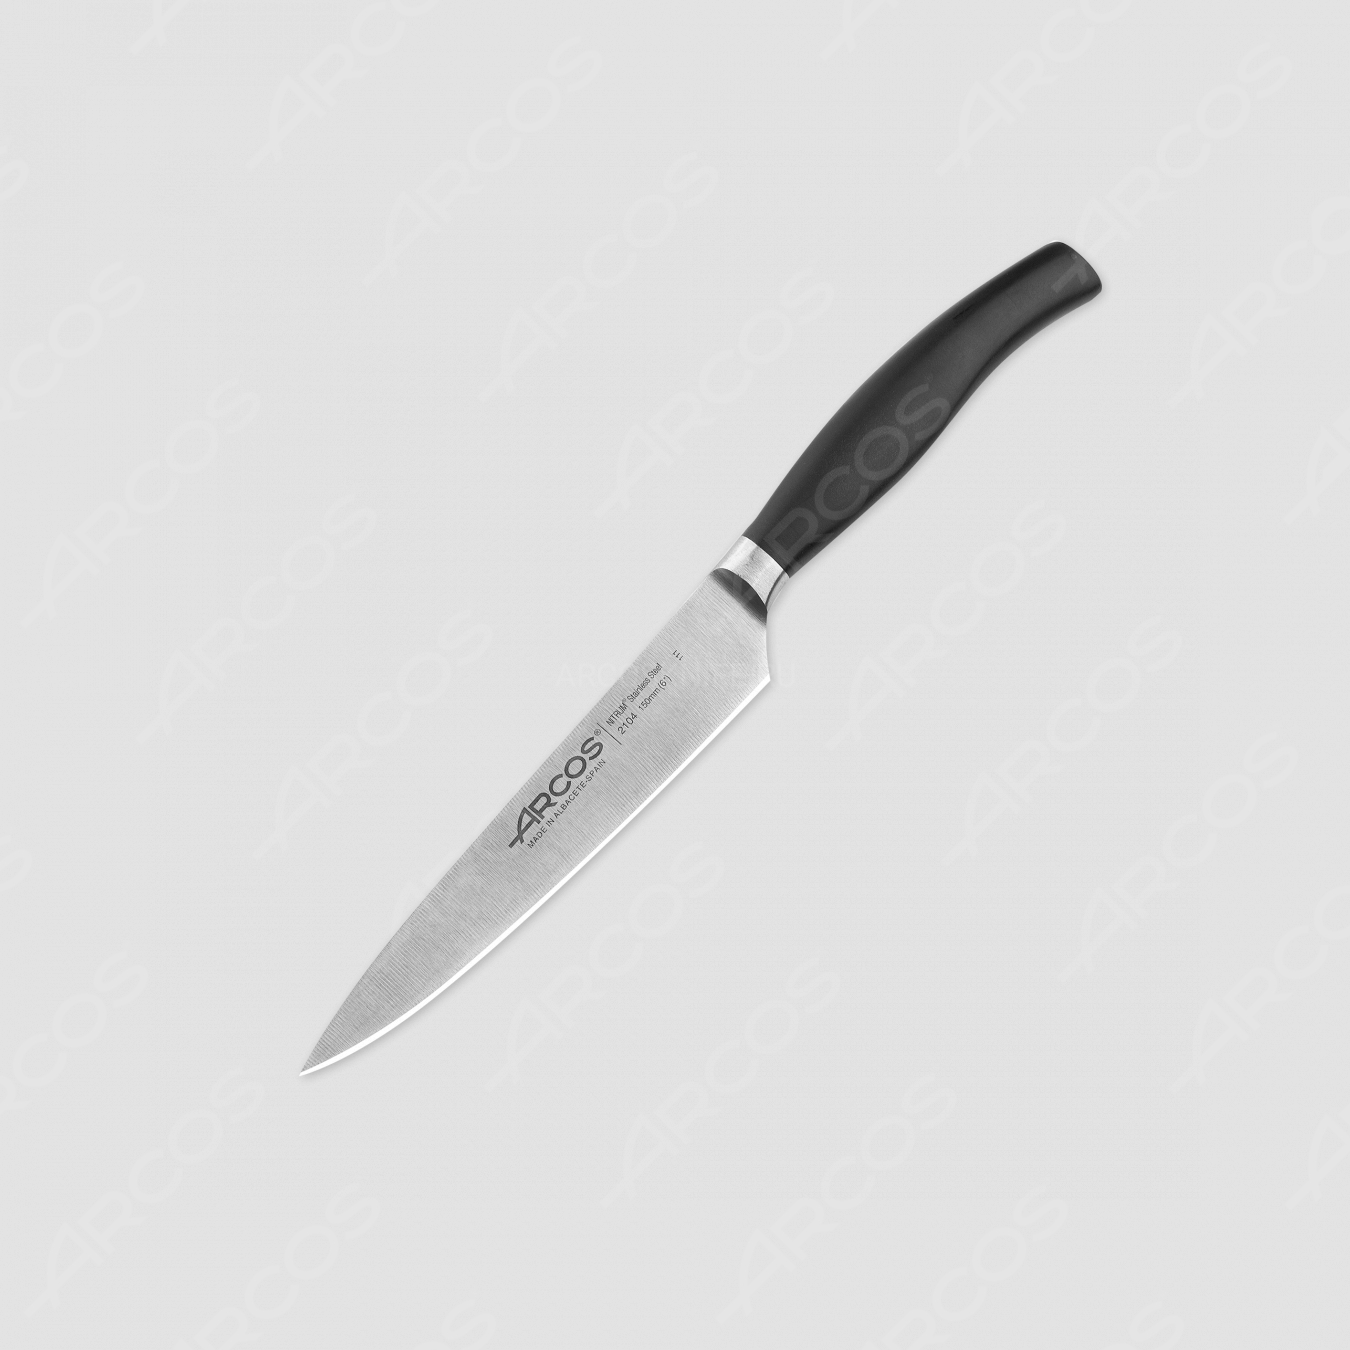 Нож кухонный для нарезки, 15 см, серия Clara, ARCOS, Испания